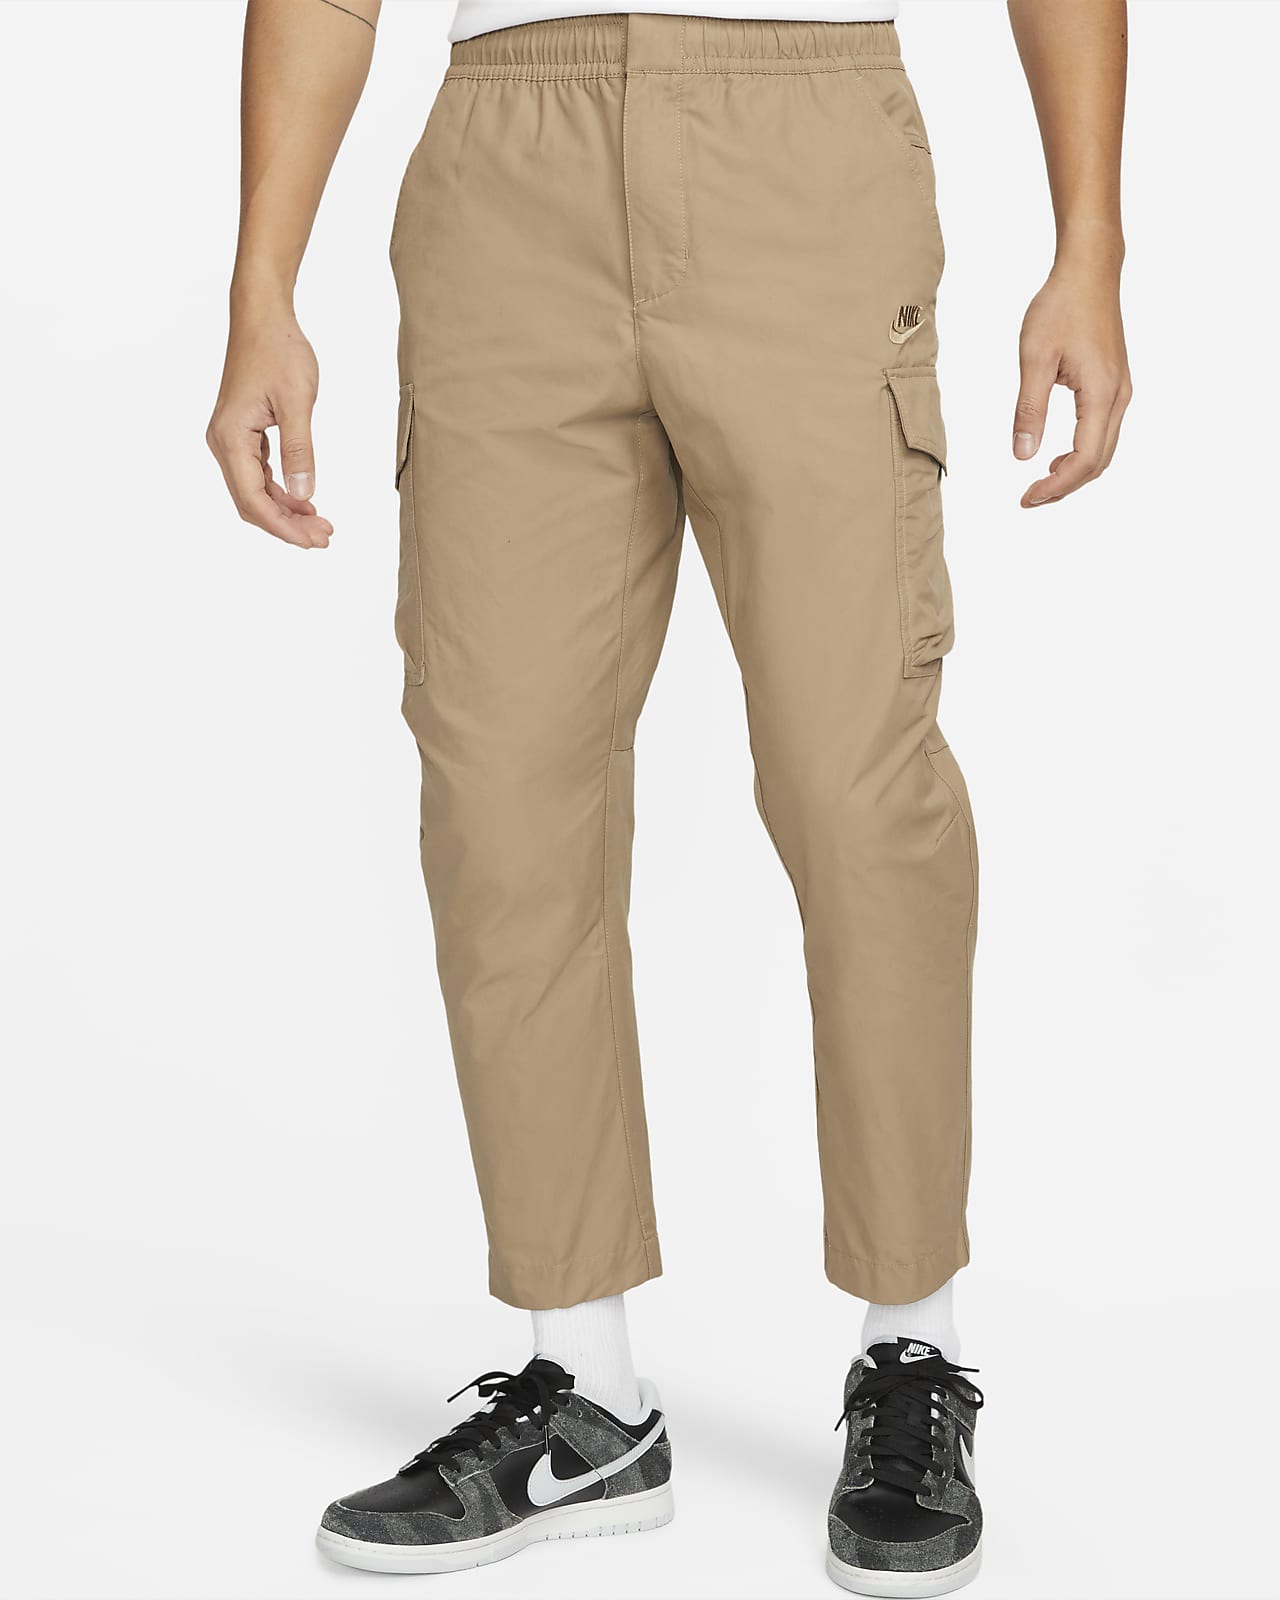 Nike Sportswear Men's Unlined Utility Cargo Trousers